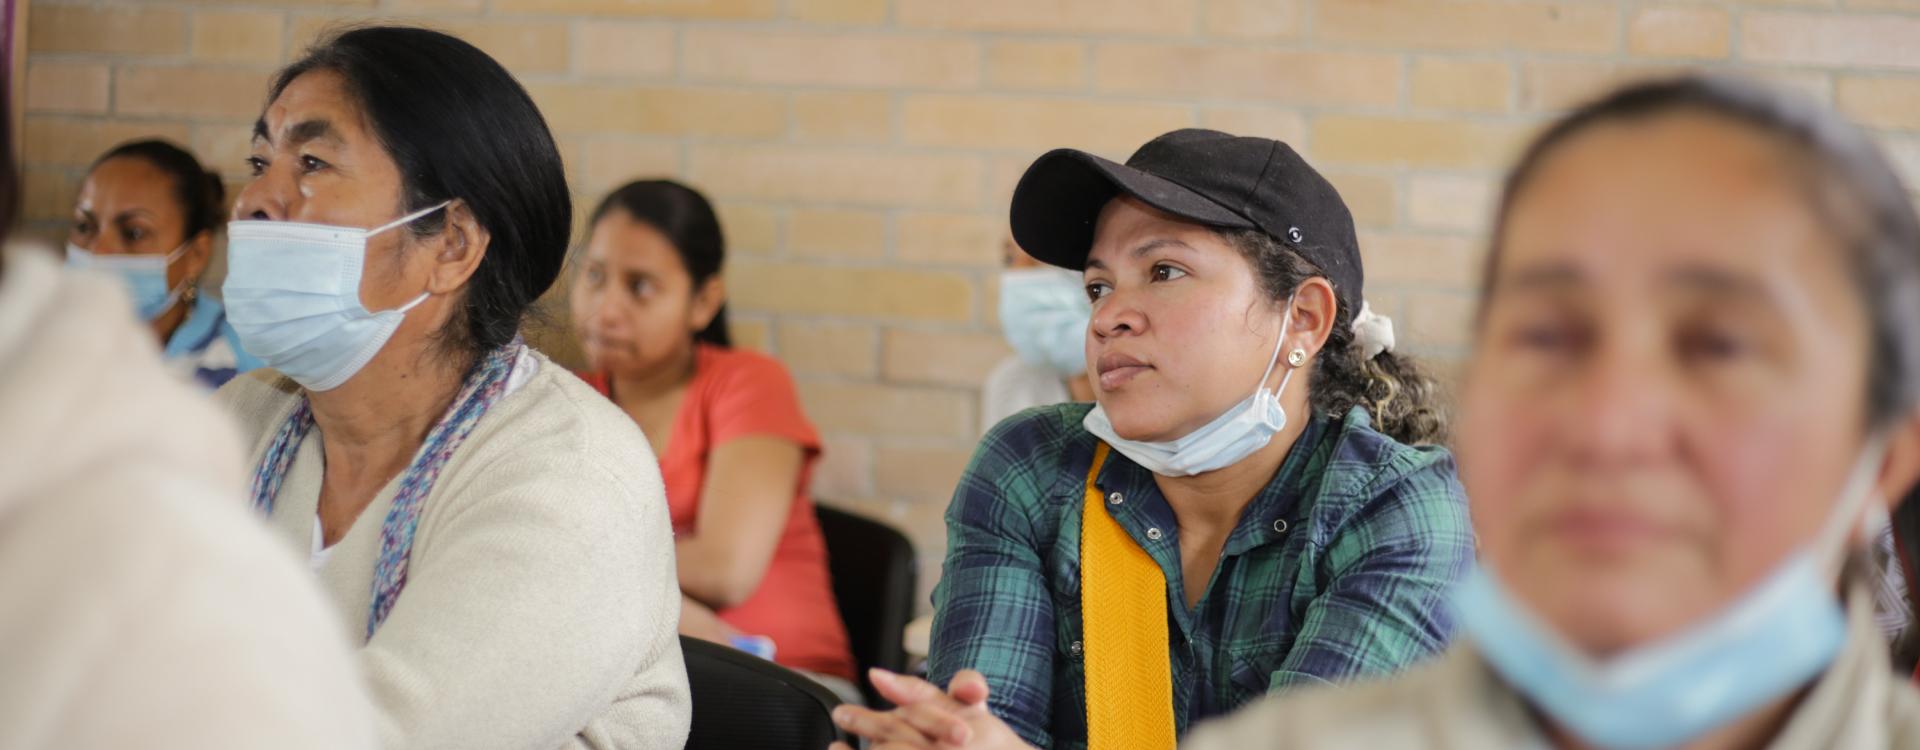 Mujeres asistentes a socialización de resultados de investigación sobre cuidado comunitario en Bogotá